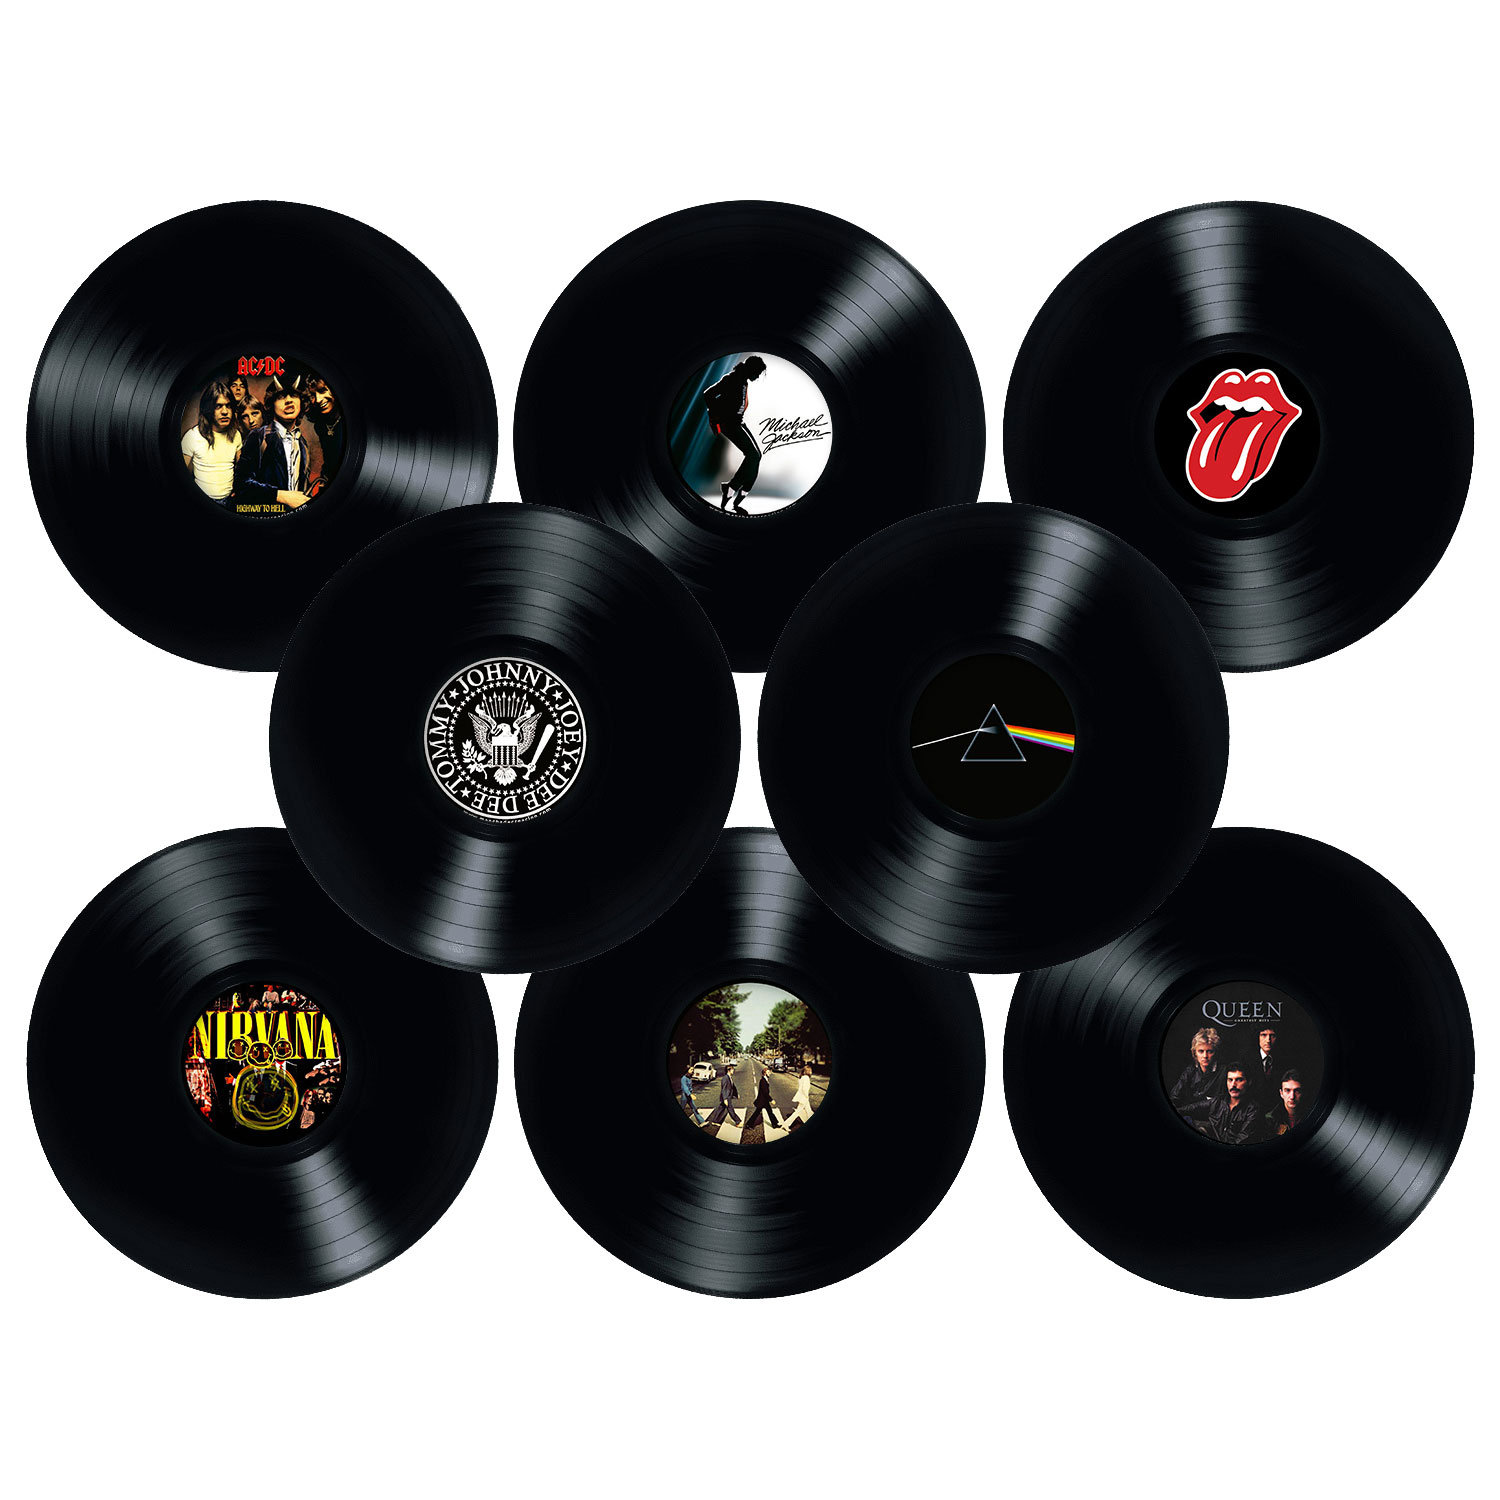 Factory Records - 50 discos de vinilo vintage genuinos de 12 pulgadas,  decoraciones de pared y decoración temática para fiestas, recuerdos  musicales